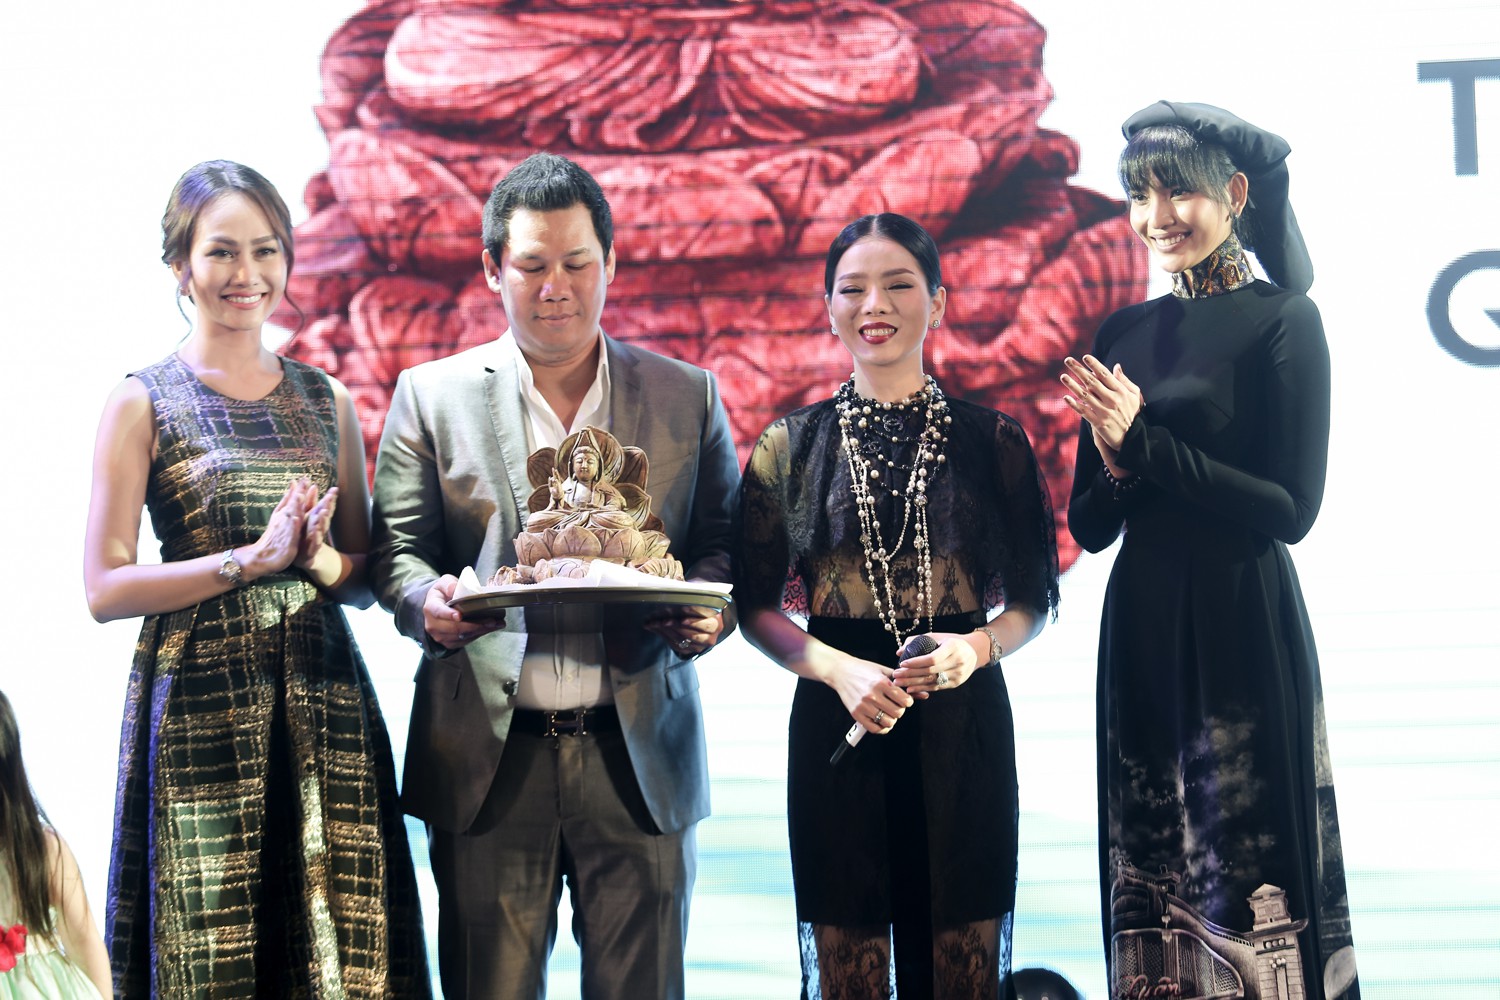 Á hậu Trương Thị May rất vui khi thuyết phục được vợ chồng ca sĩ Lệ Quyên mua chiếc tượng Phật cổ để gây quỹ “Vòng tay thái bình”, được biết vợ chồng Lệ Quyên đã bỏ ra 8000 USD để đấu giá thành công, đóng góp cho quỹ.